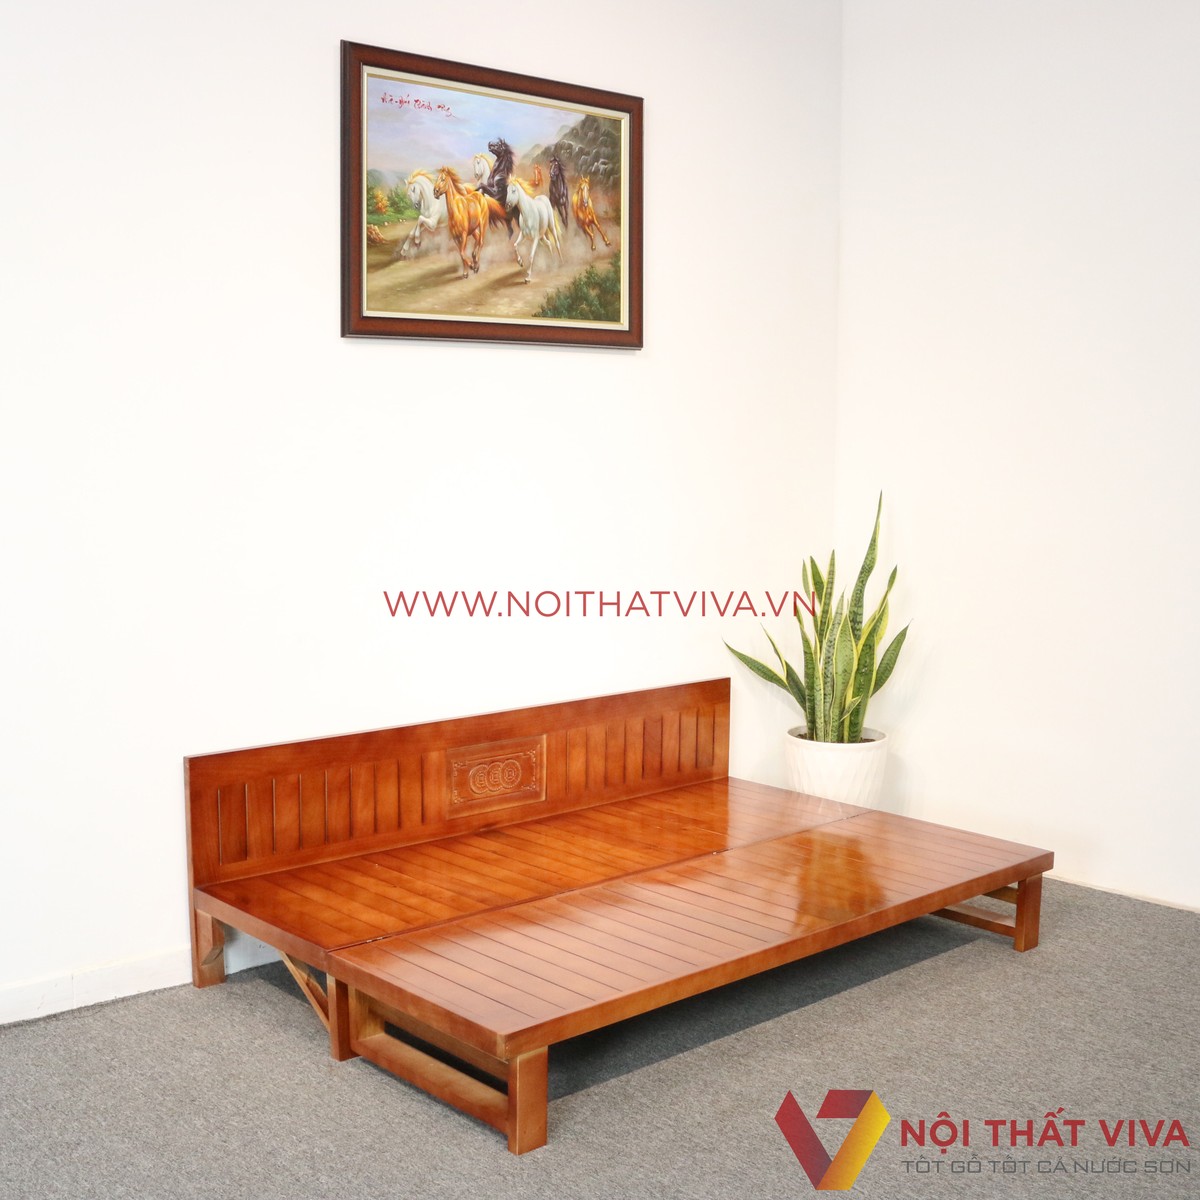 Ghế sofa gỗ đẹp sáng tạo có thể kéo ra thành giường sẽ là lựa chọn hoàn hảo cho những người yêu thích sự sang trọng và đẳng cấp. Với thiết kế tối ưu, sản phẩm sẽ tạo nên sự thoải mái và tiện nghi cho gia đình bạn.